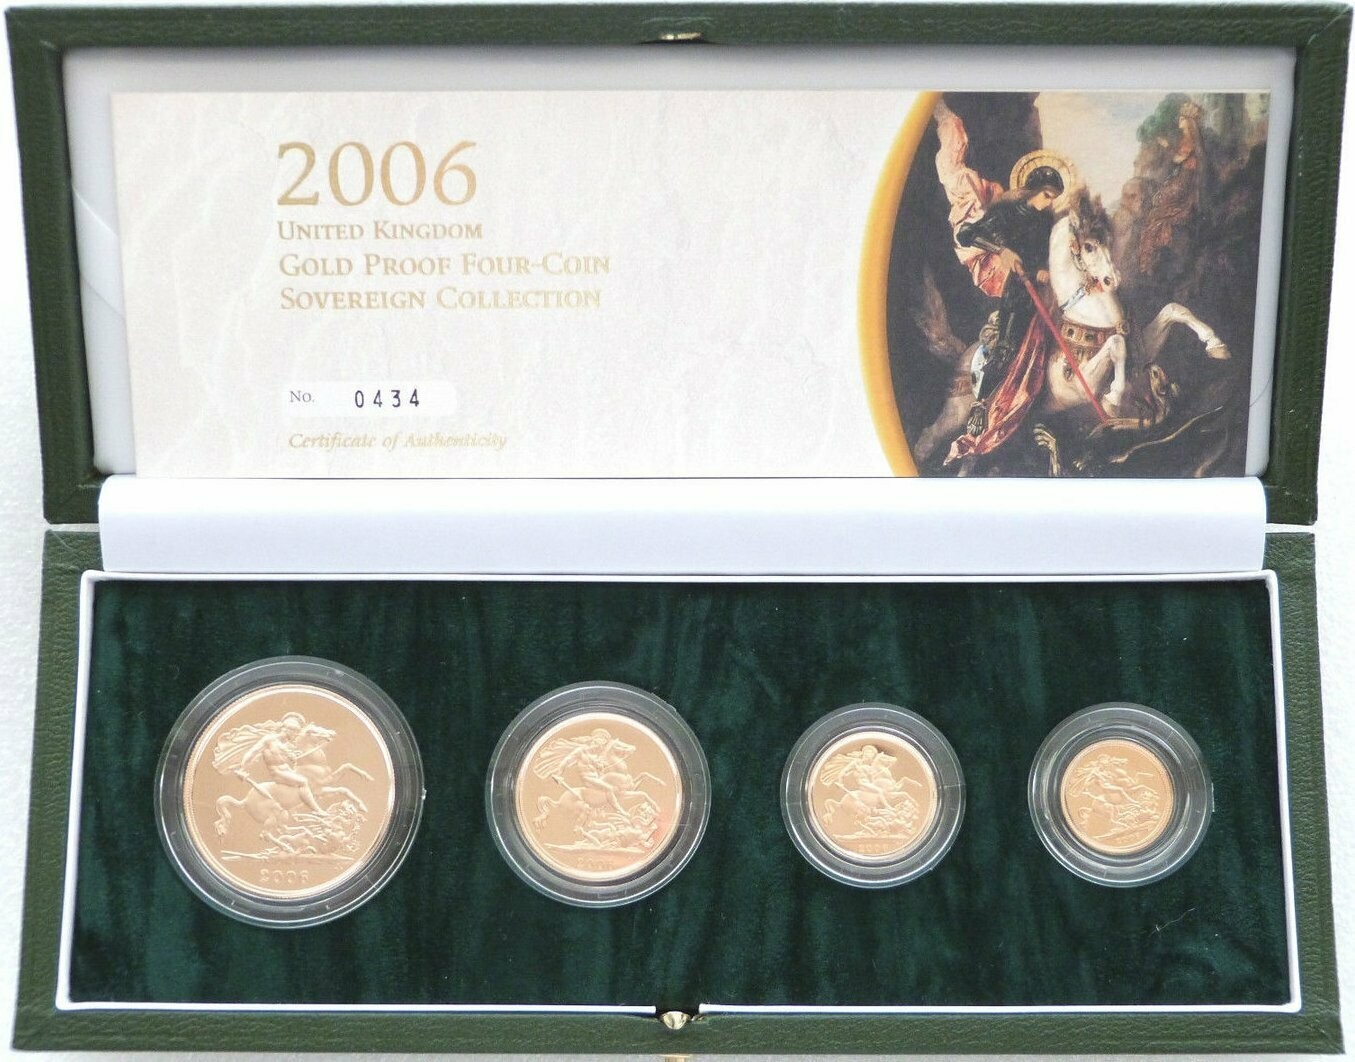 2006 Sovereign Gold Proof 4 Coin Set Box Coa